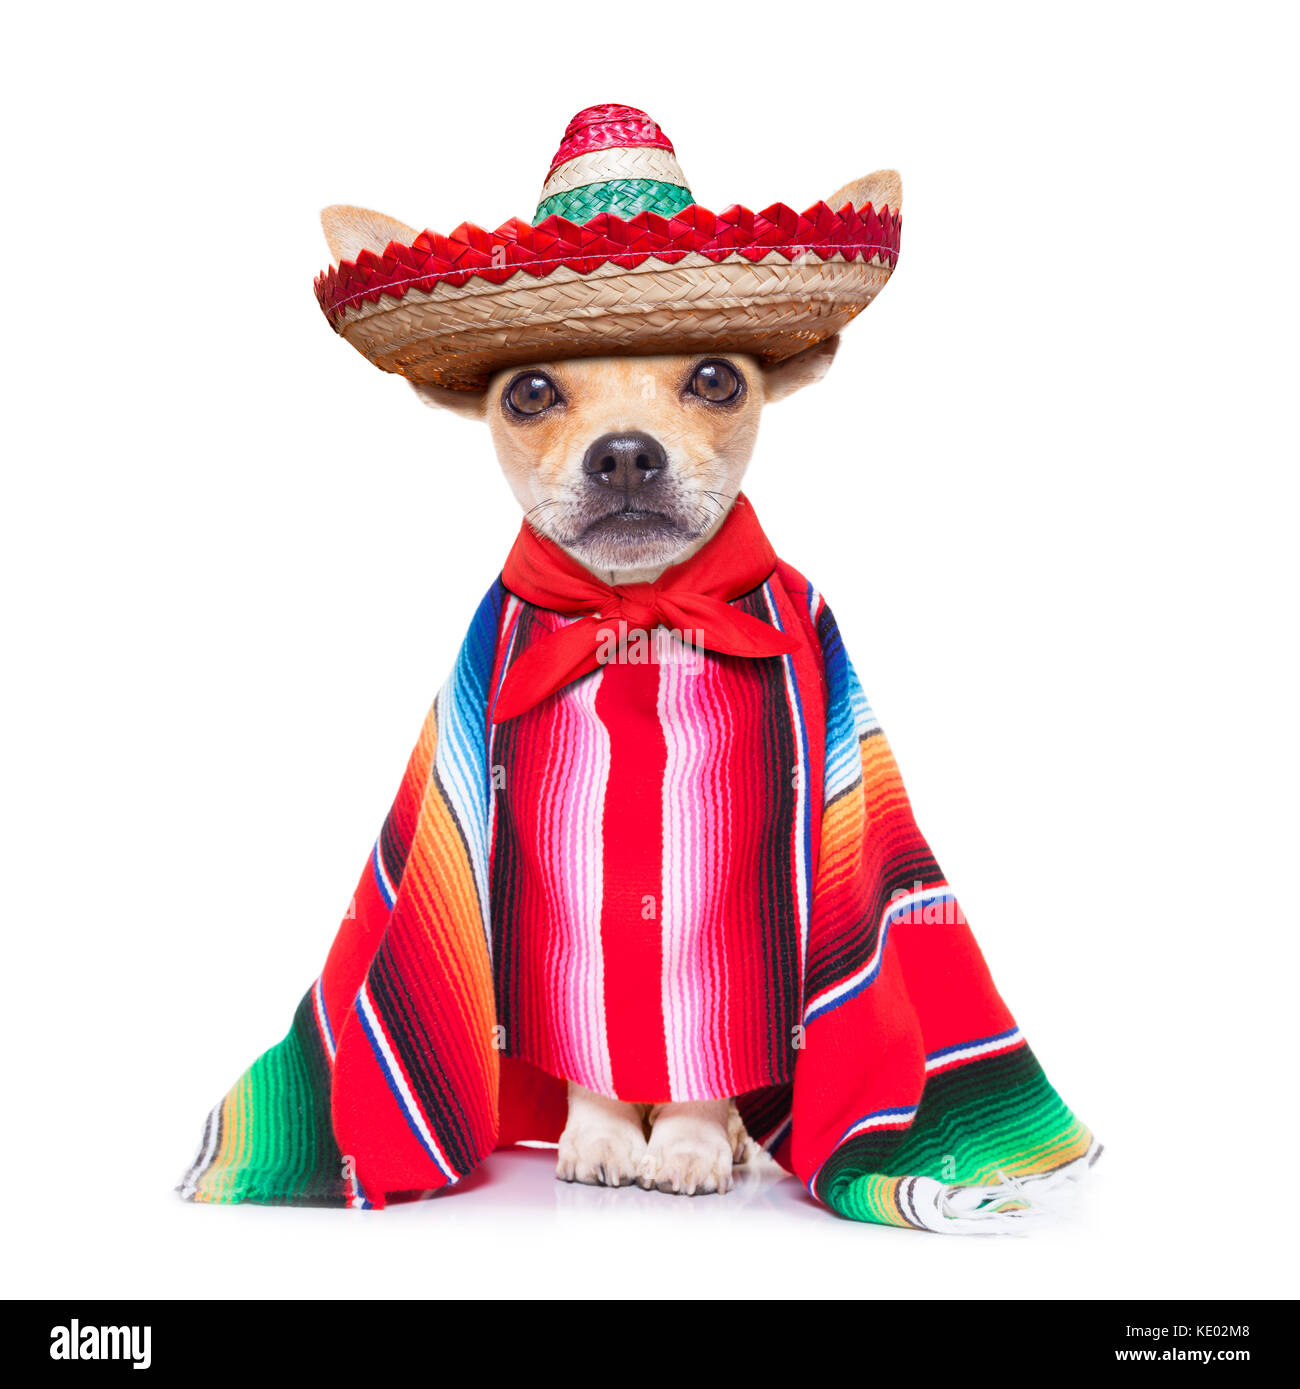 Divertimento mariachi messicani cane chihuahua indossando un cappello sombrero e poncho rosso, isolato su sfondo bianco Foto Stock